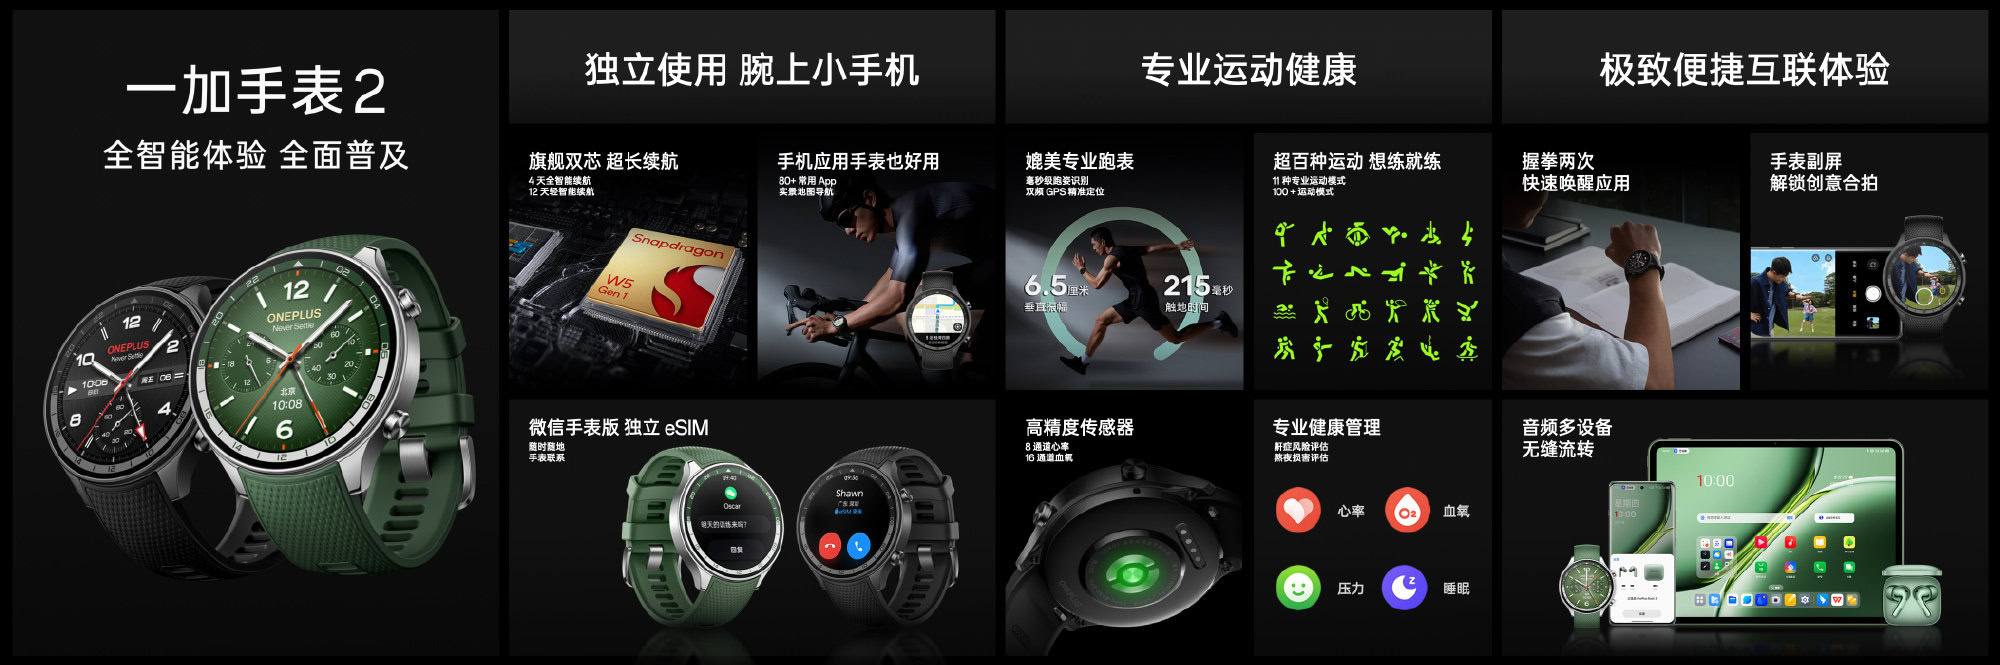 Fiche de la montre OnePlus 2r